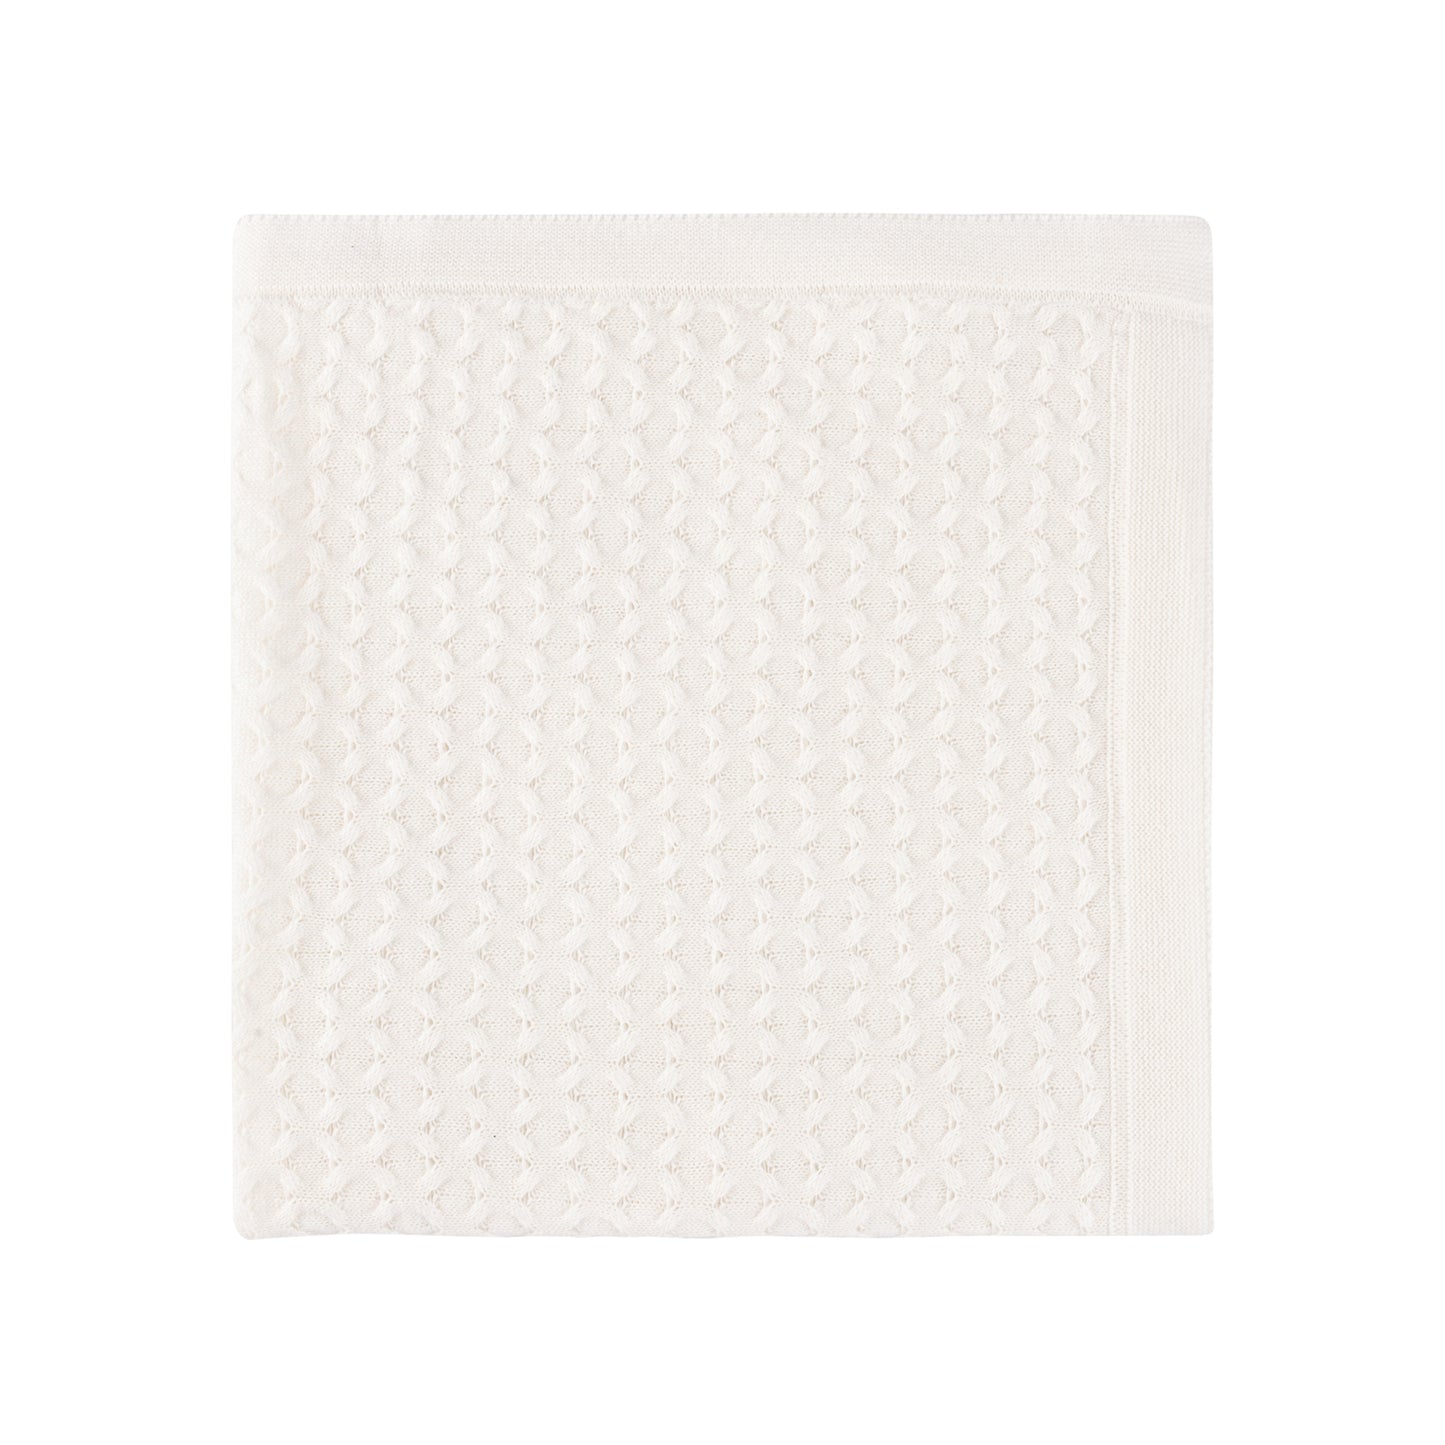 Honeycomb Knit Layette Set